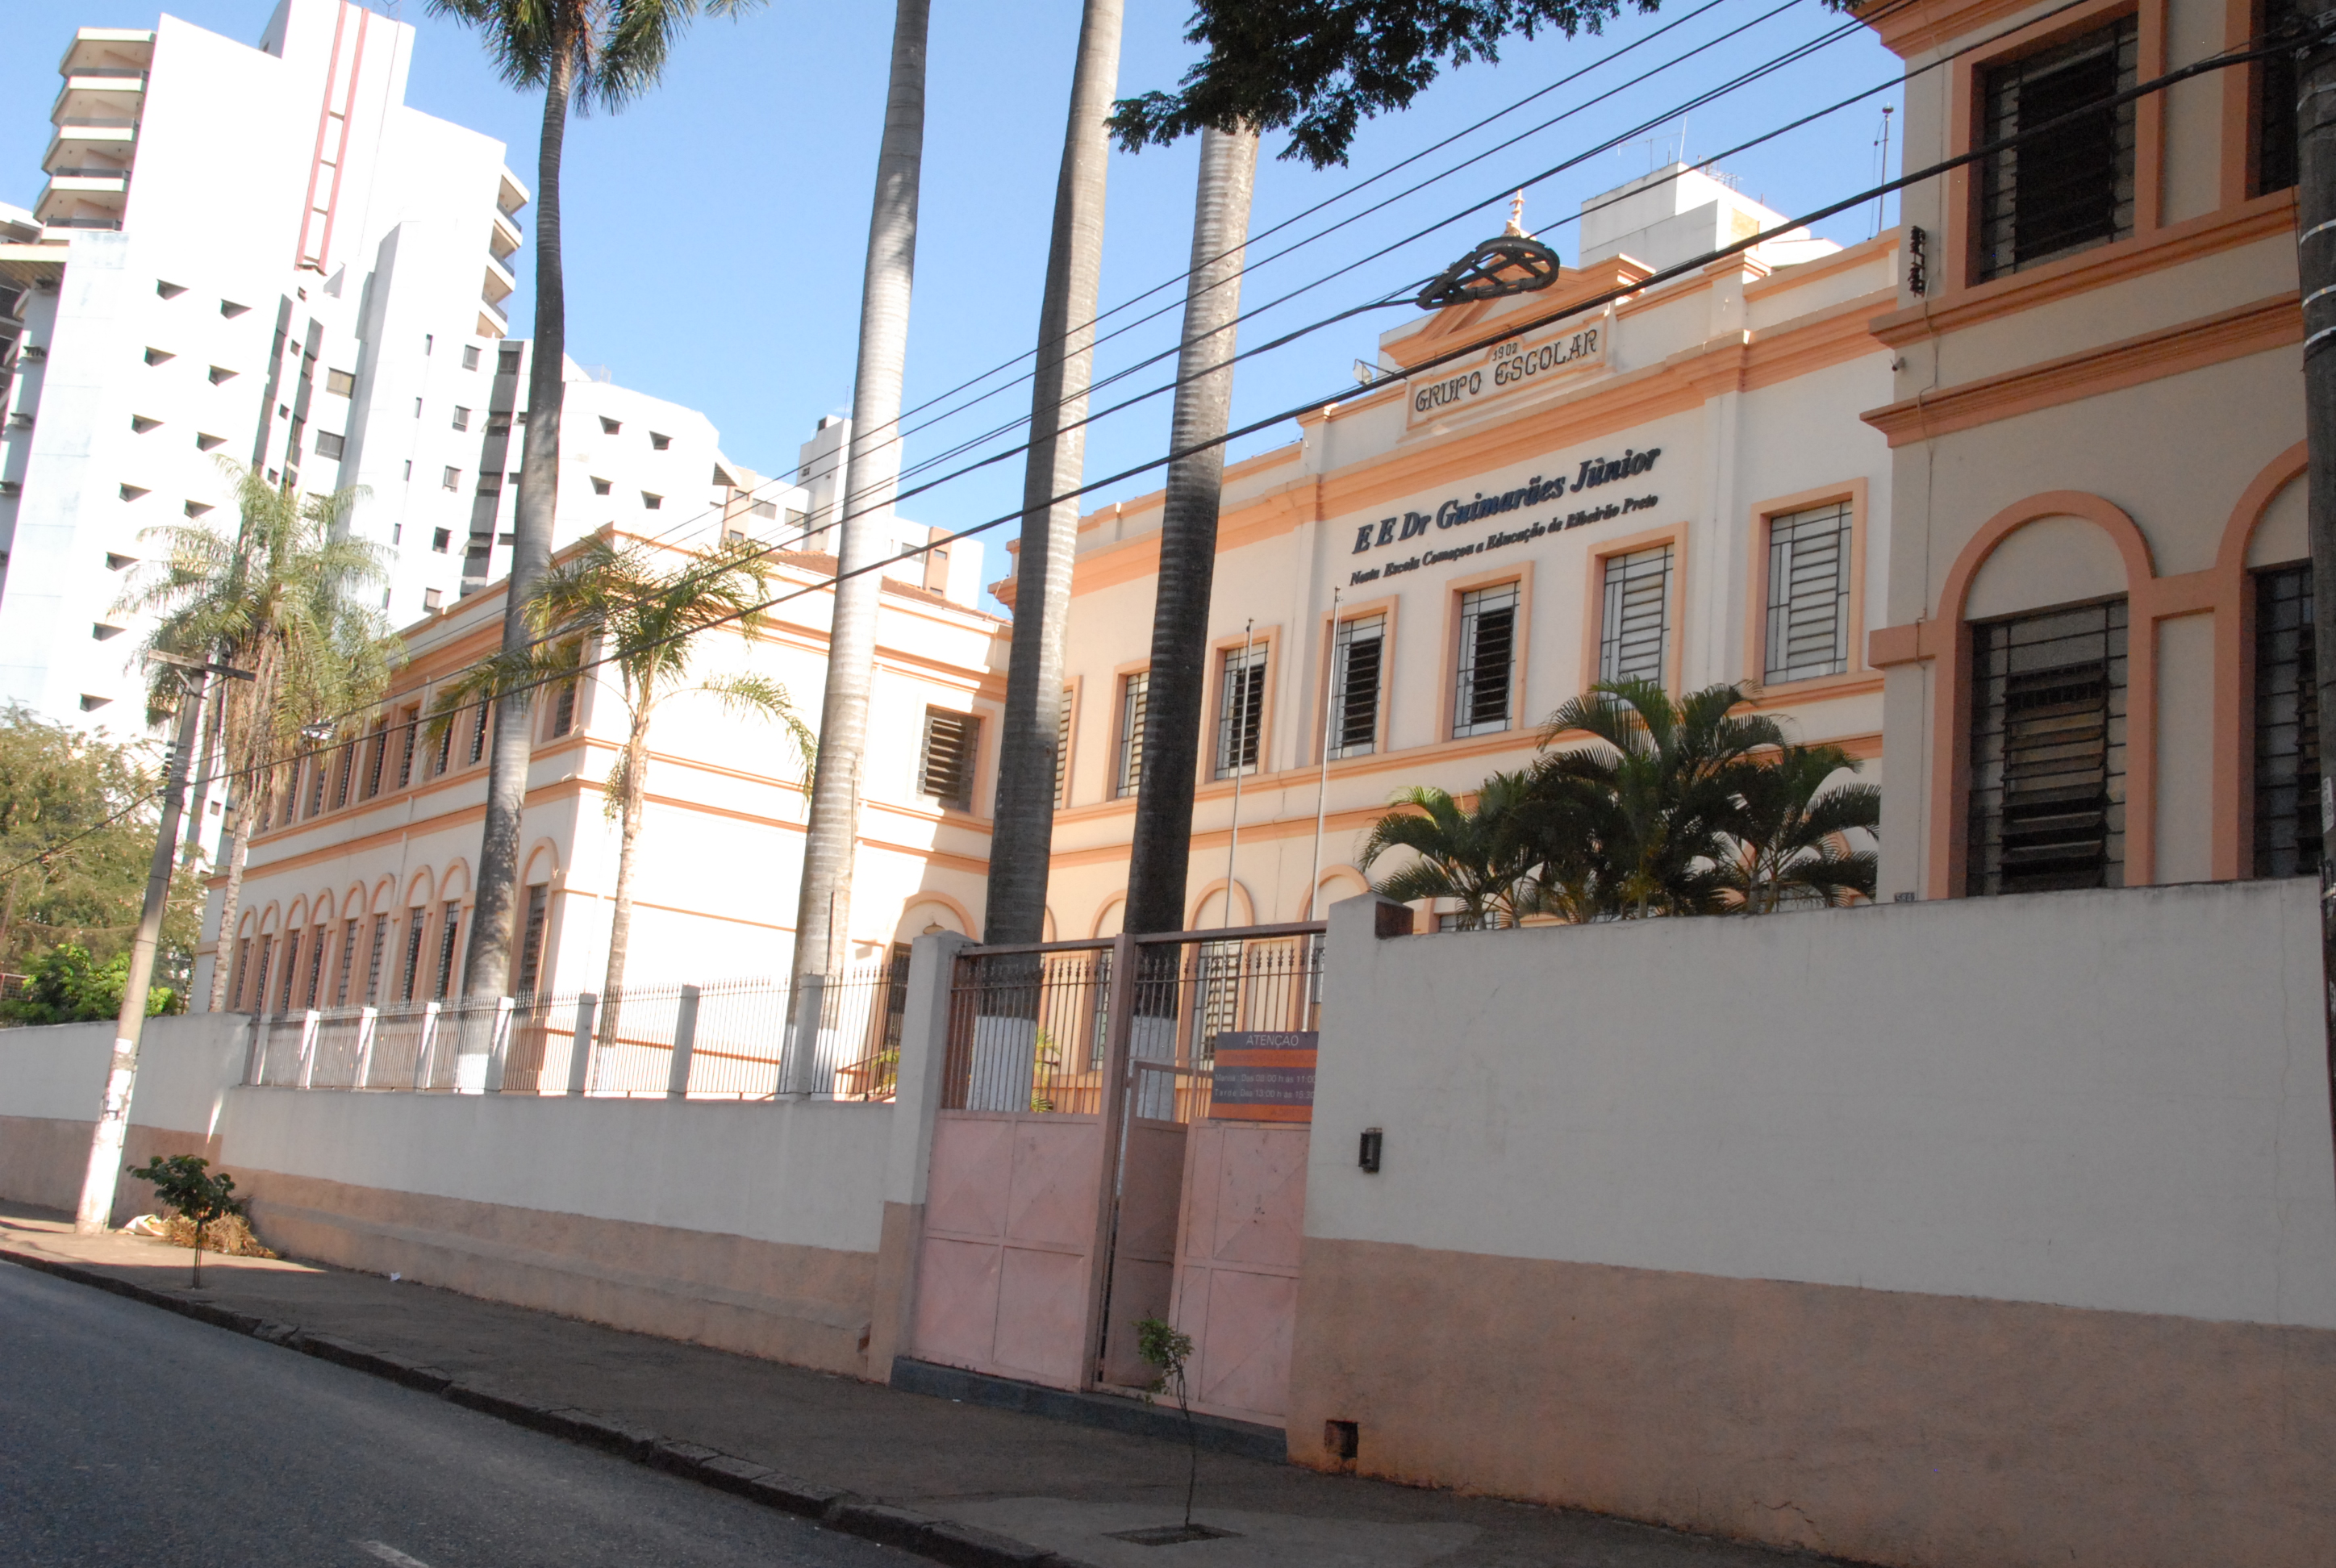 Revide, Escola mais antiga de Ribeirão Preto completa 120 anos, guimaraes junior, ribeirão preto, 120 anos